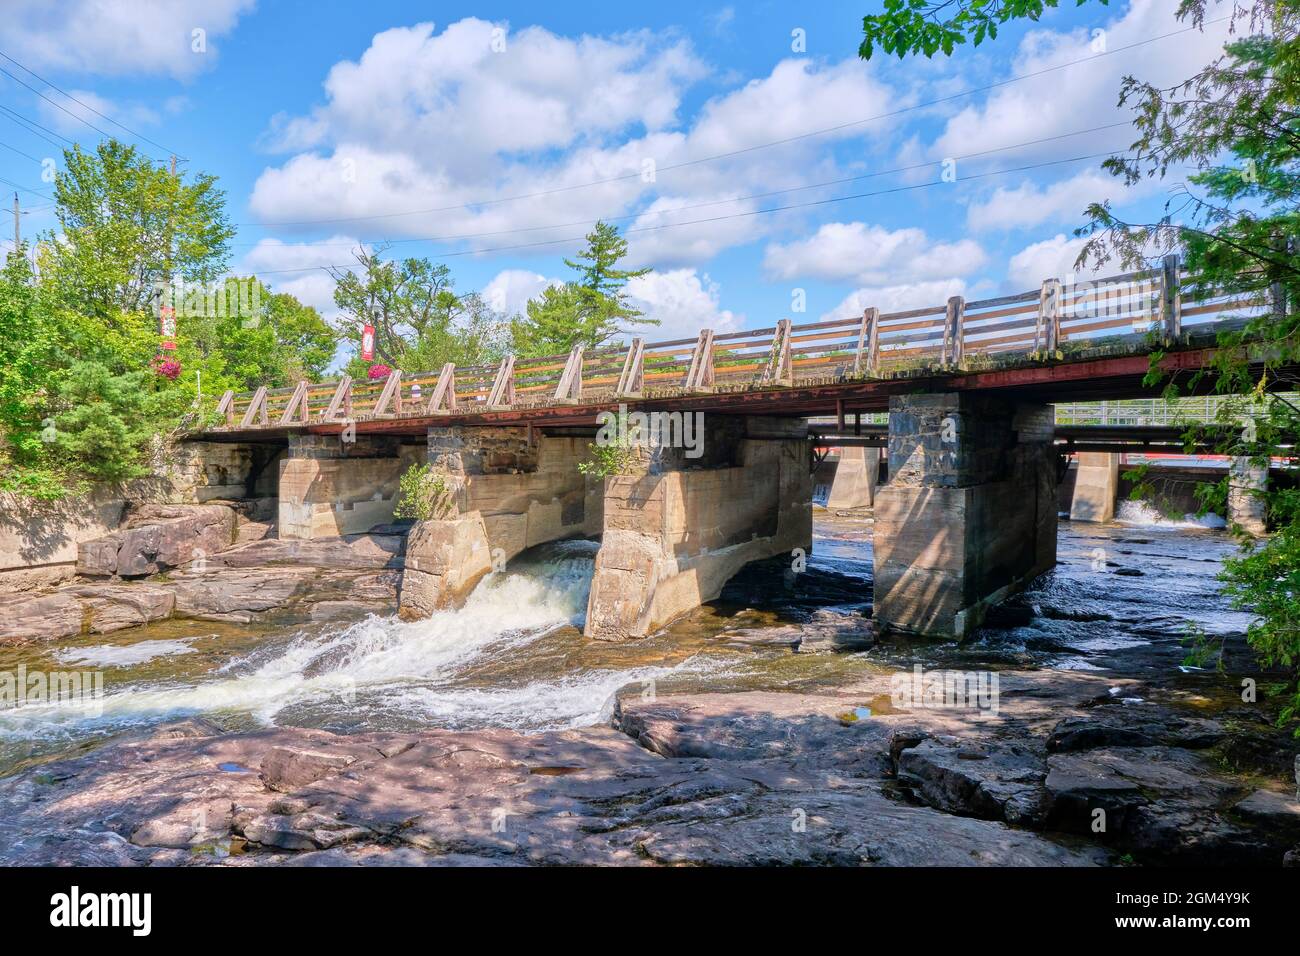 Bala Falls befinden sich in der kleinen Touristenstadt Bala Ontario, Kanada. Hier fließt Wasser aus dem See Muskoka in den Moon River. Stockfoto